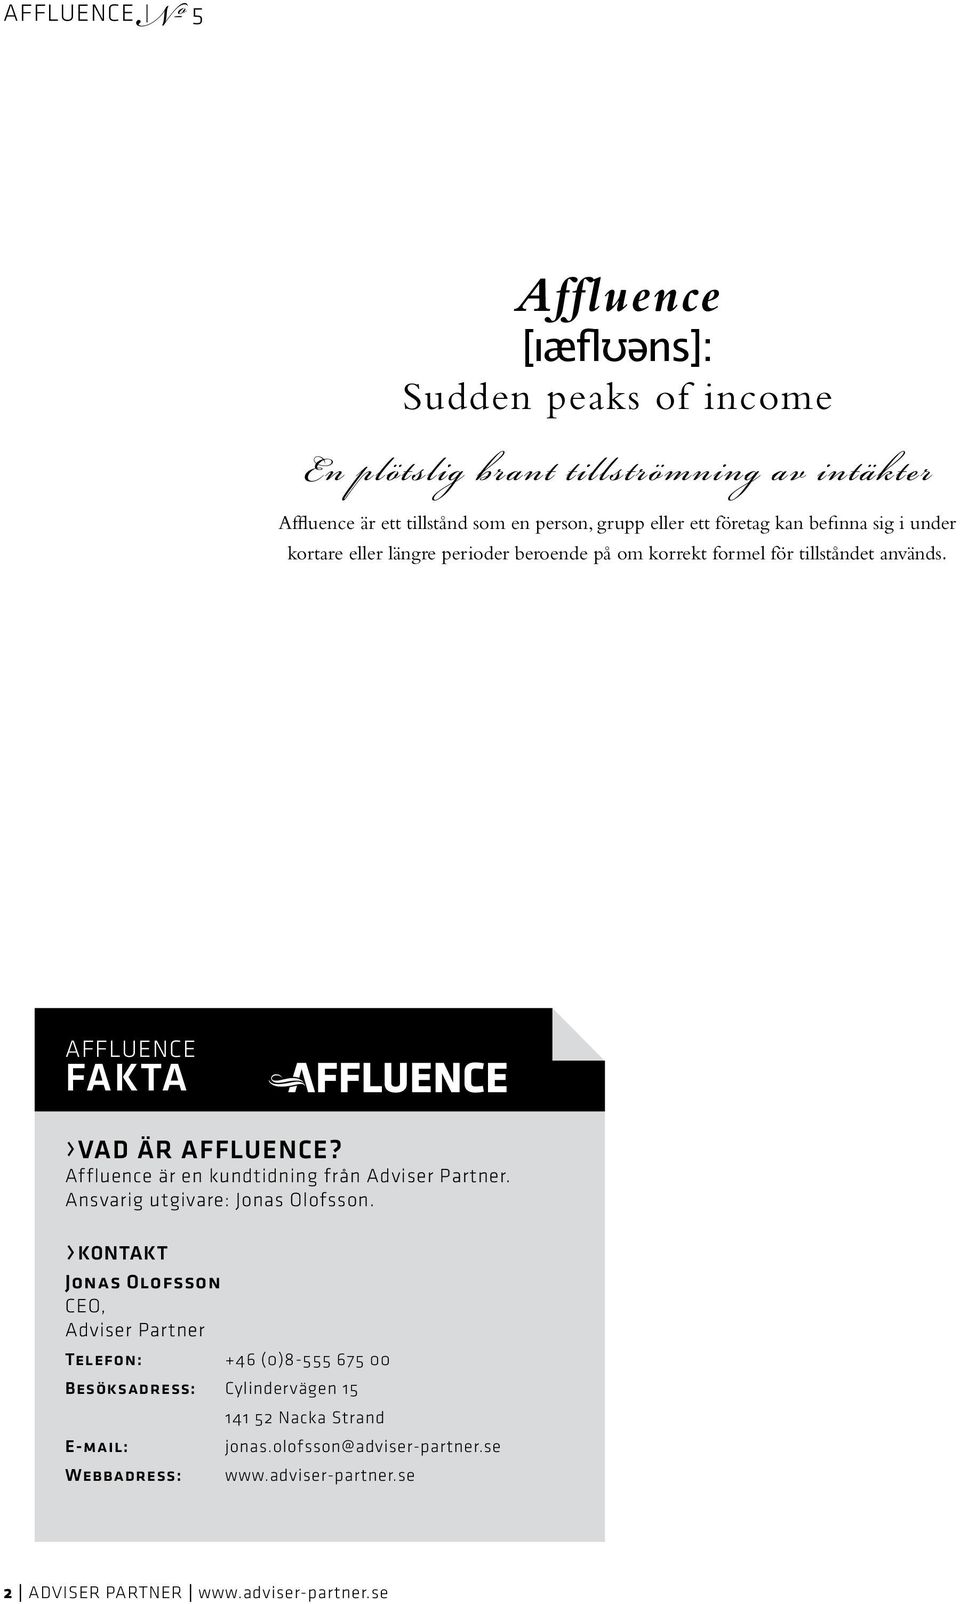 Affluence är en kundtidning från Adviser Partner. Ansvarig utgivare: Jonas Olofsson.